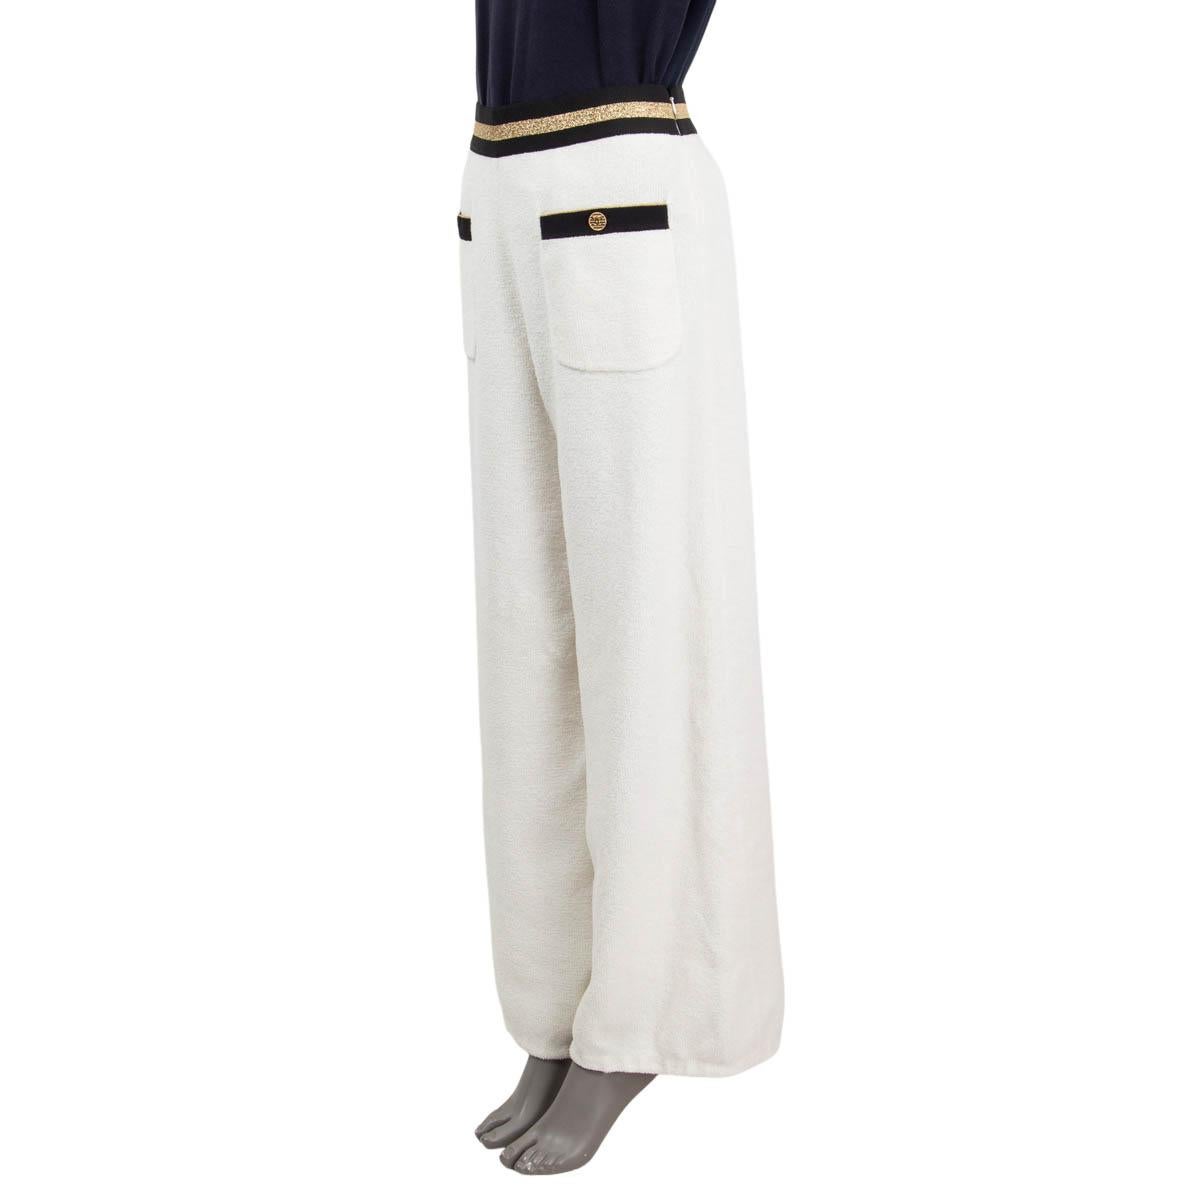 Pantalon large à jambes en éponge 100% authentique Chanel 2019 La Pausa en coton blanc (83%) et polyamide (17%), avec une ceinture élastique en polyester noir et or (70%), latex (25%) et polyamide (5%). Deux poches plaquées boutonnées 